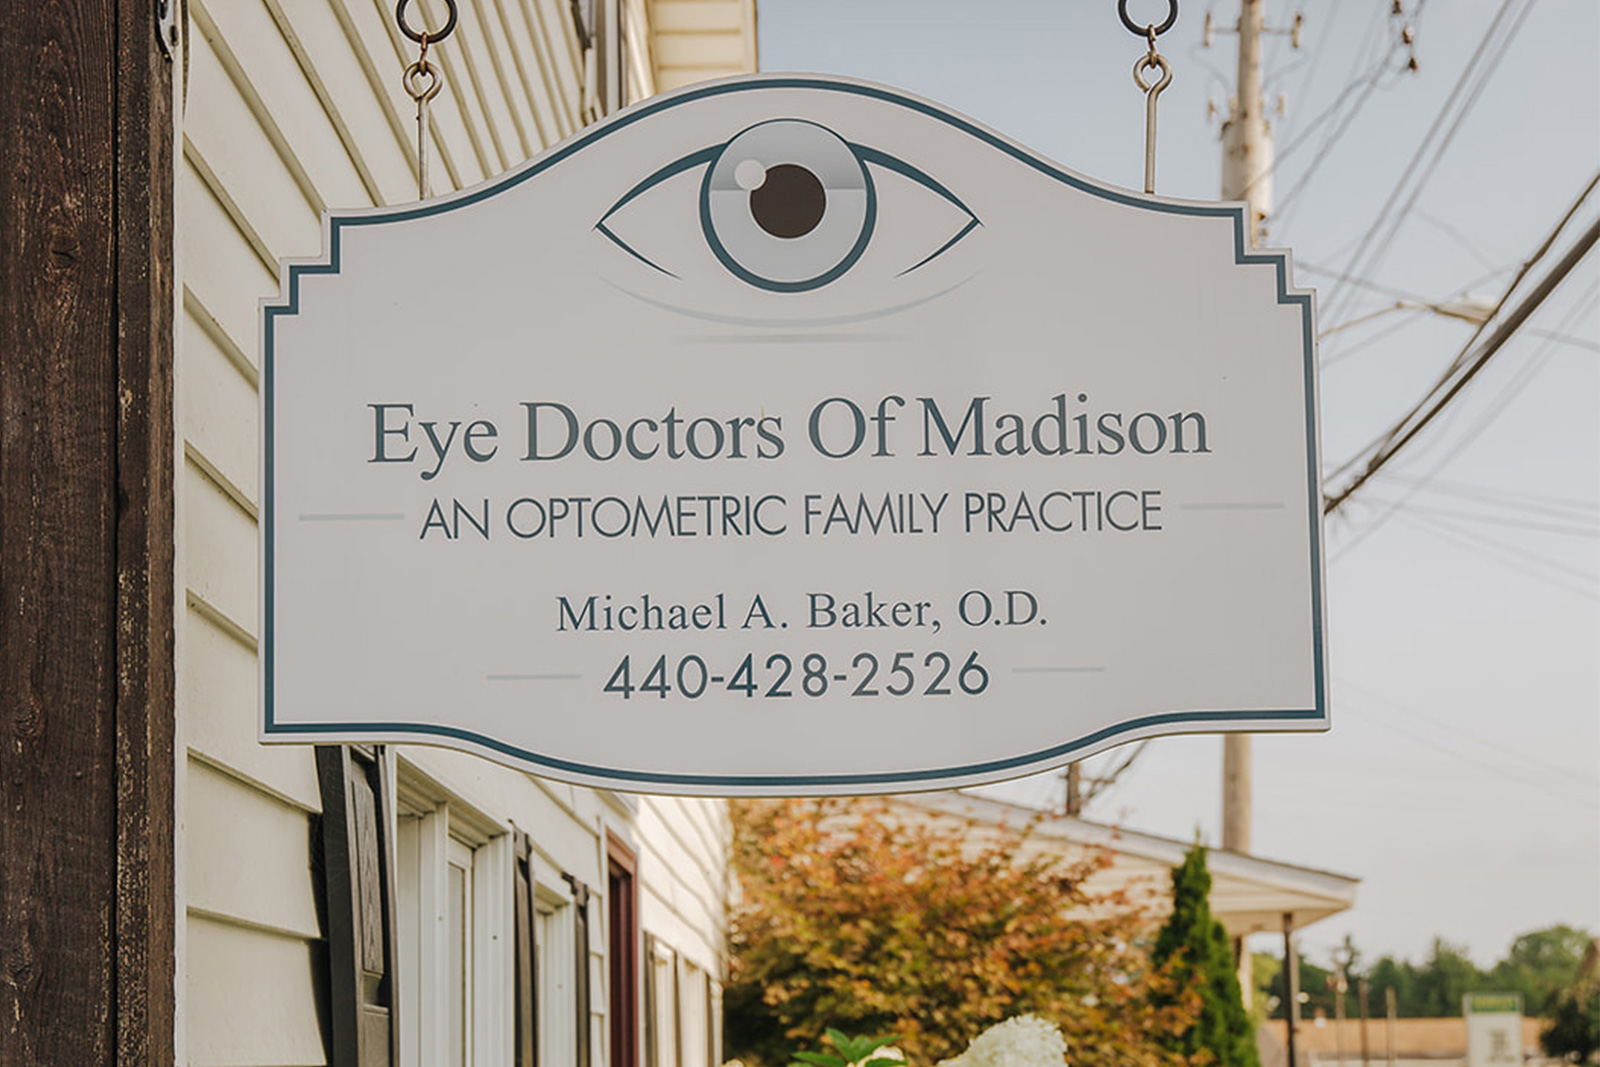 Eye Doctor Of Madison Signage